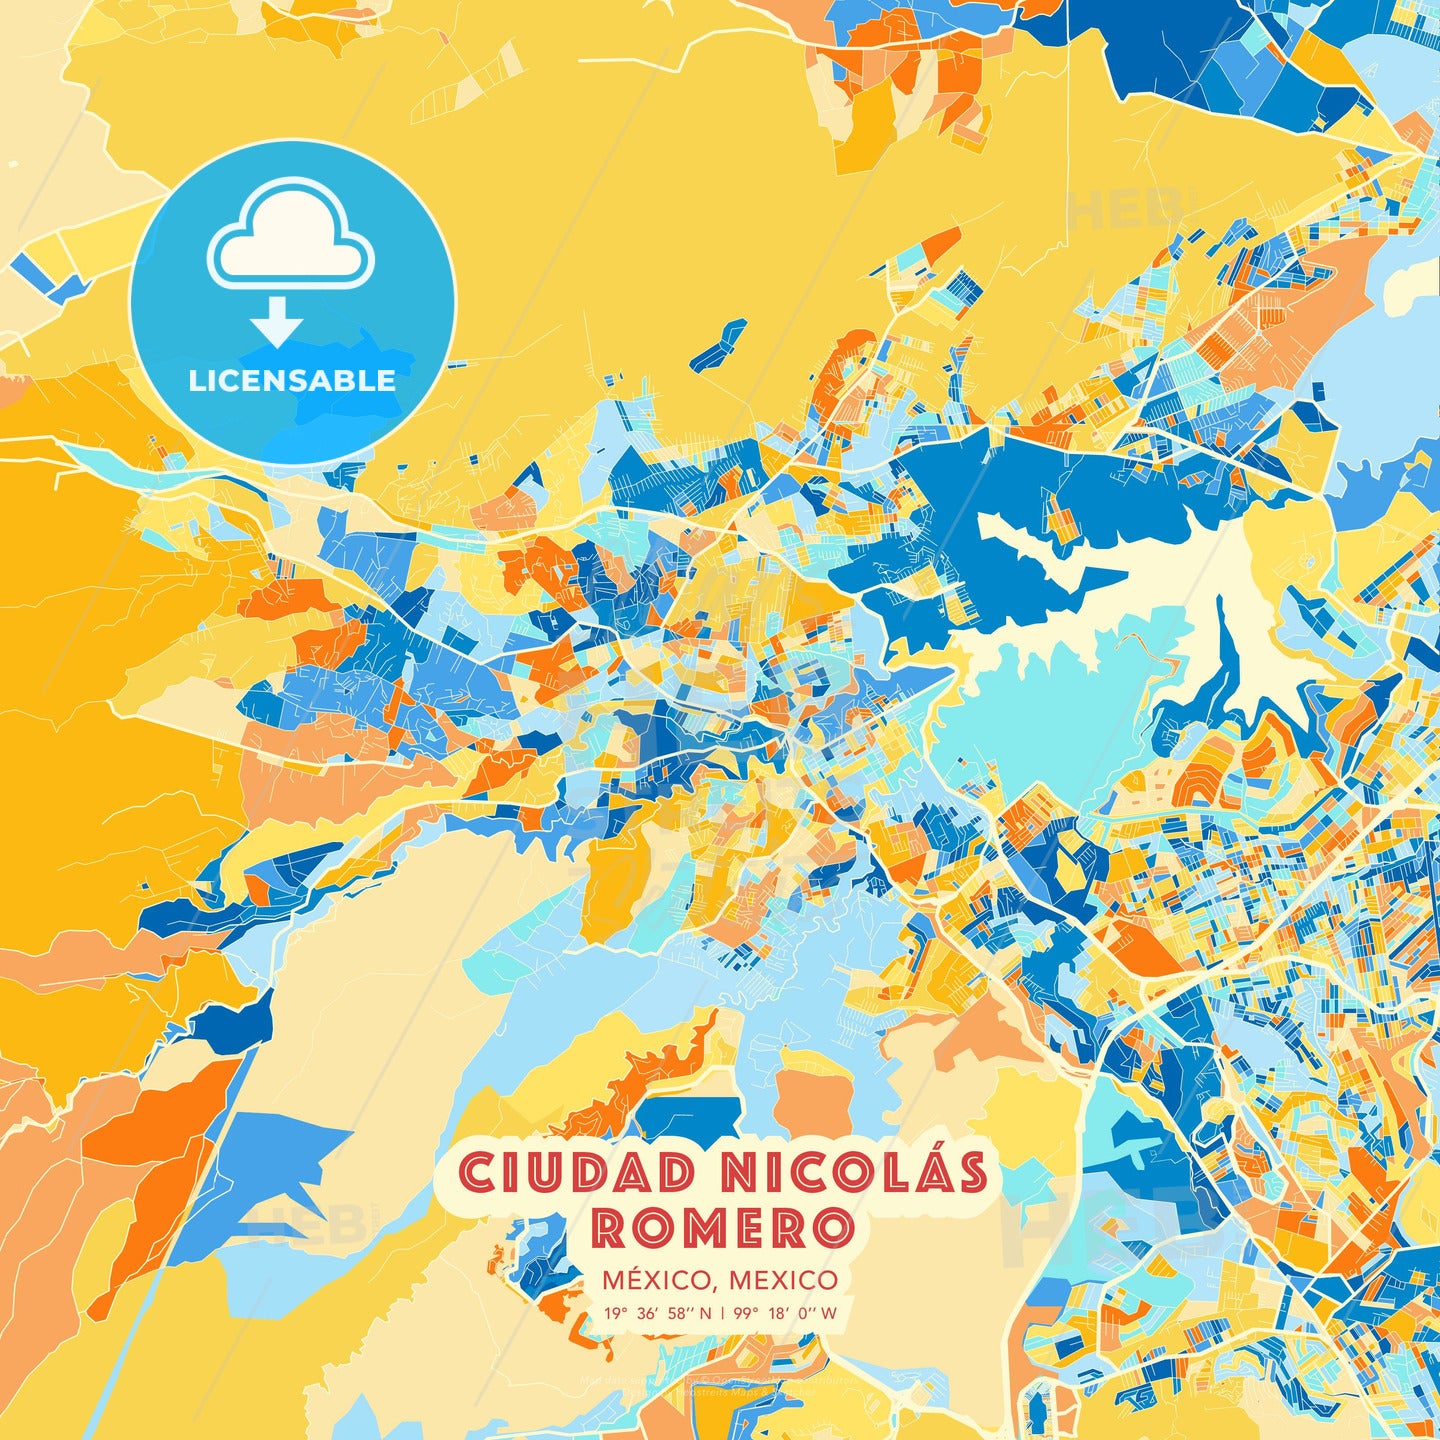 Ciudad Nicolás Romero, México, Mexico, map - HEBSTREITS Sketches